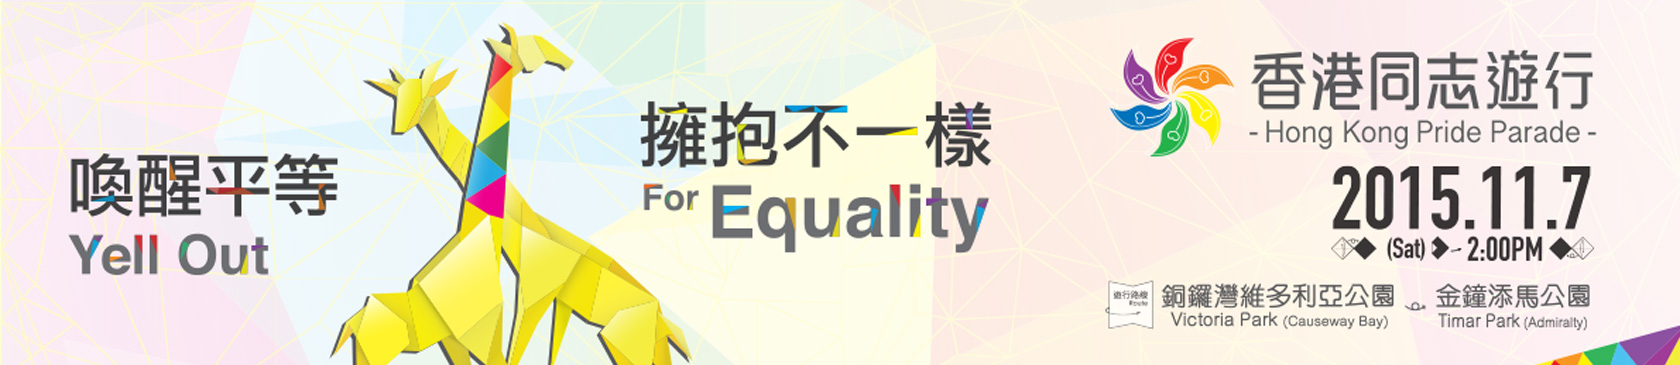 Hong Kong Pride Parade 2015 Banner